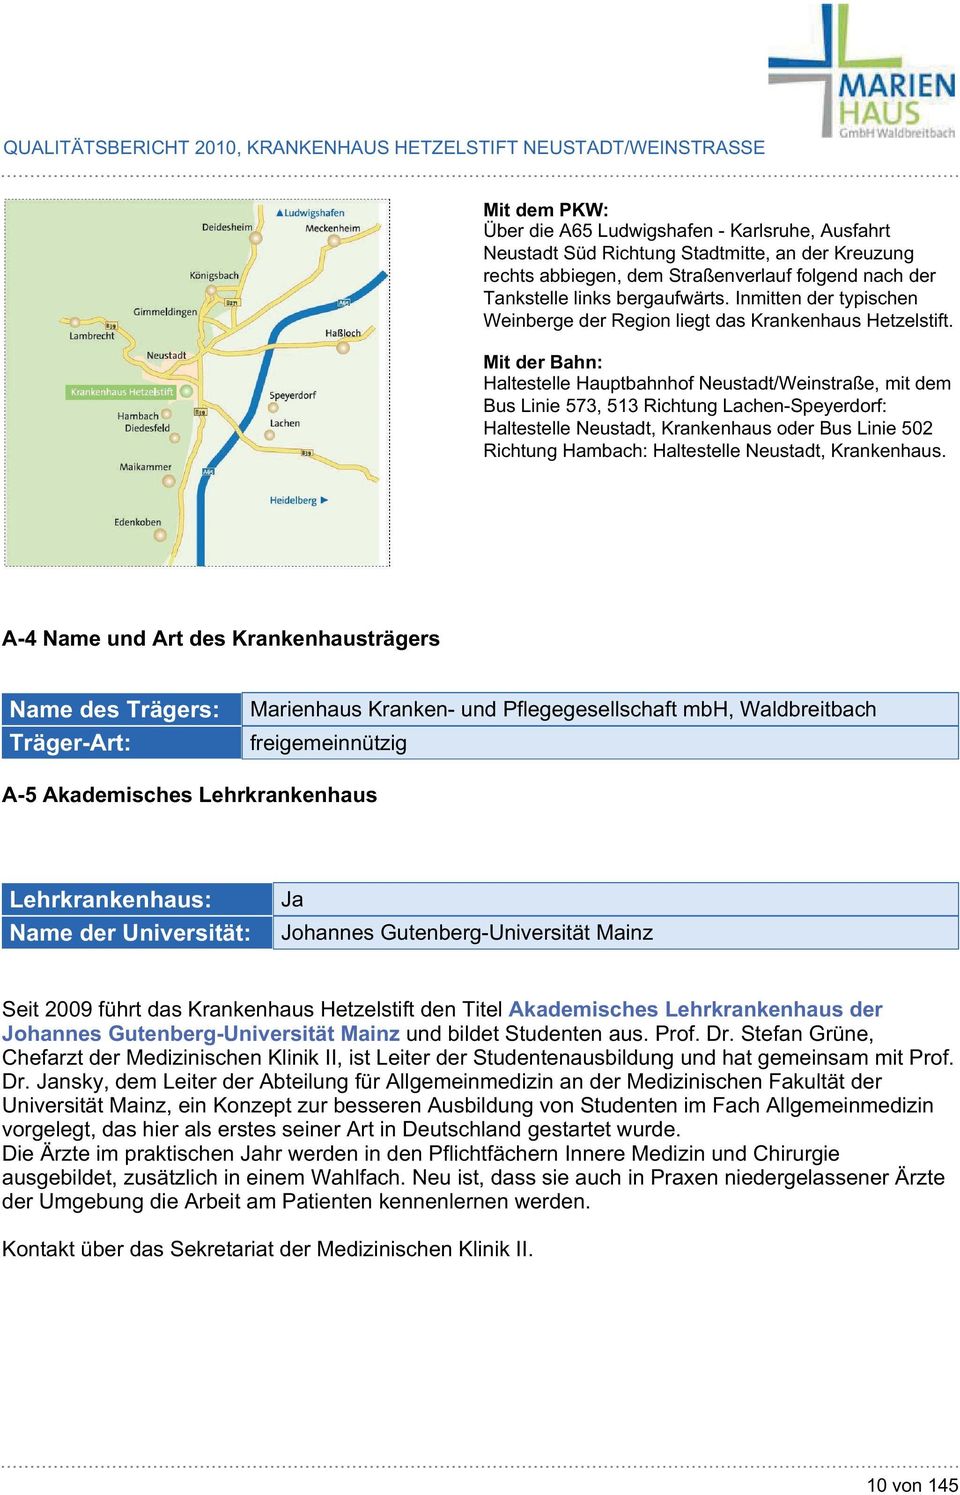 Mit der Bahn: Haltestelle Hauptbahnhof Neustadt/Weinstraße, mit dem Bus Linie 573, 513 Richtung Lachen-Speyerdorf: Haltestelle Neustadt, Krankenhaus oder Bus Linie 502 Richtung Hambach: Haltestelle